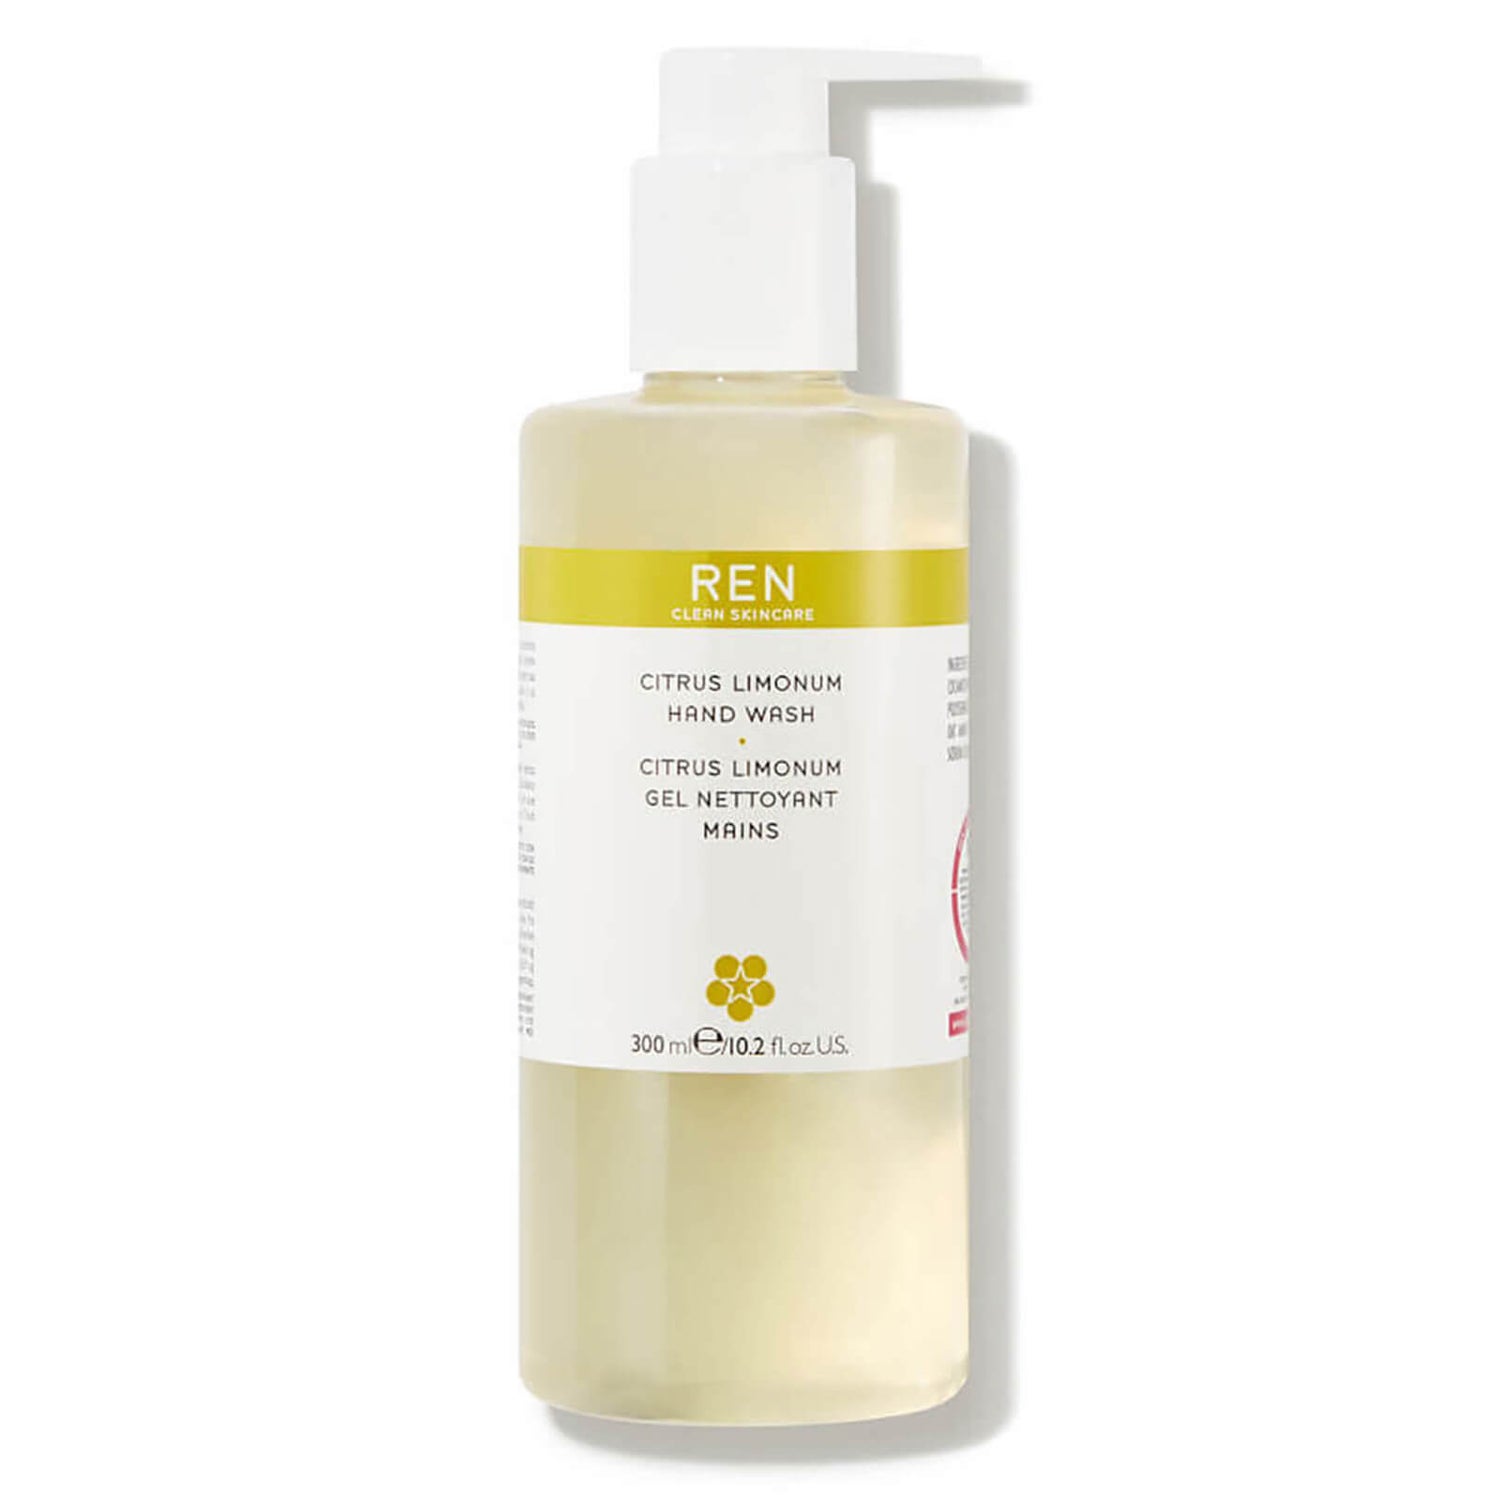 REN Clean Skincare Citrus Limonum Hand Wash 300ml